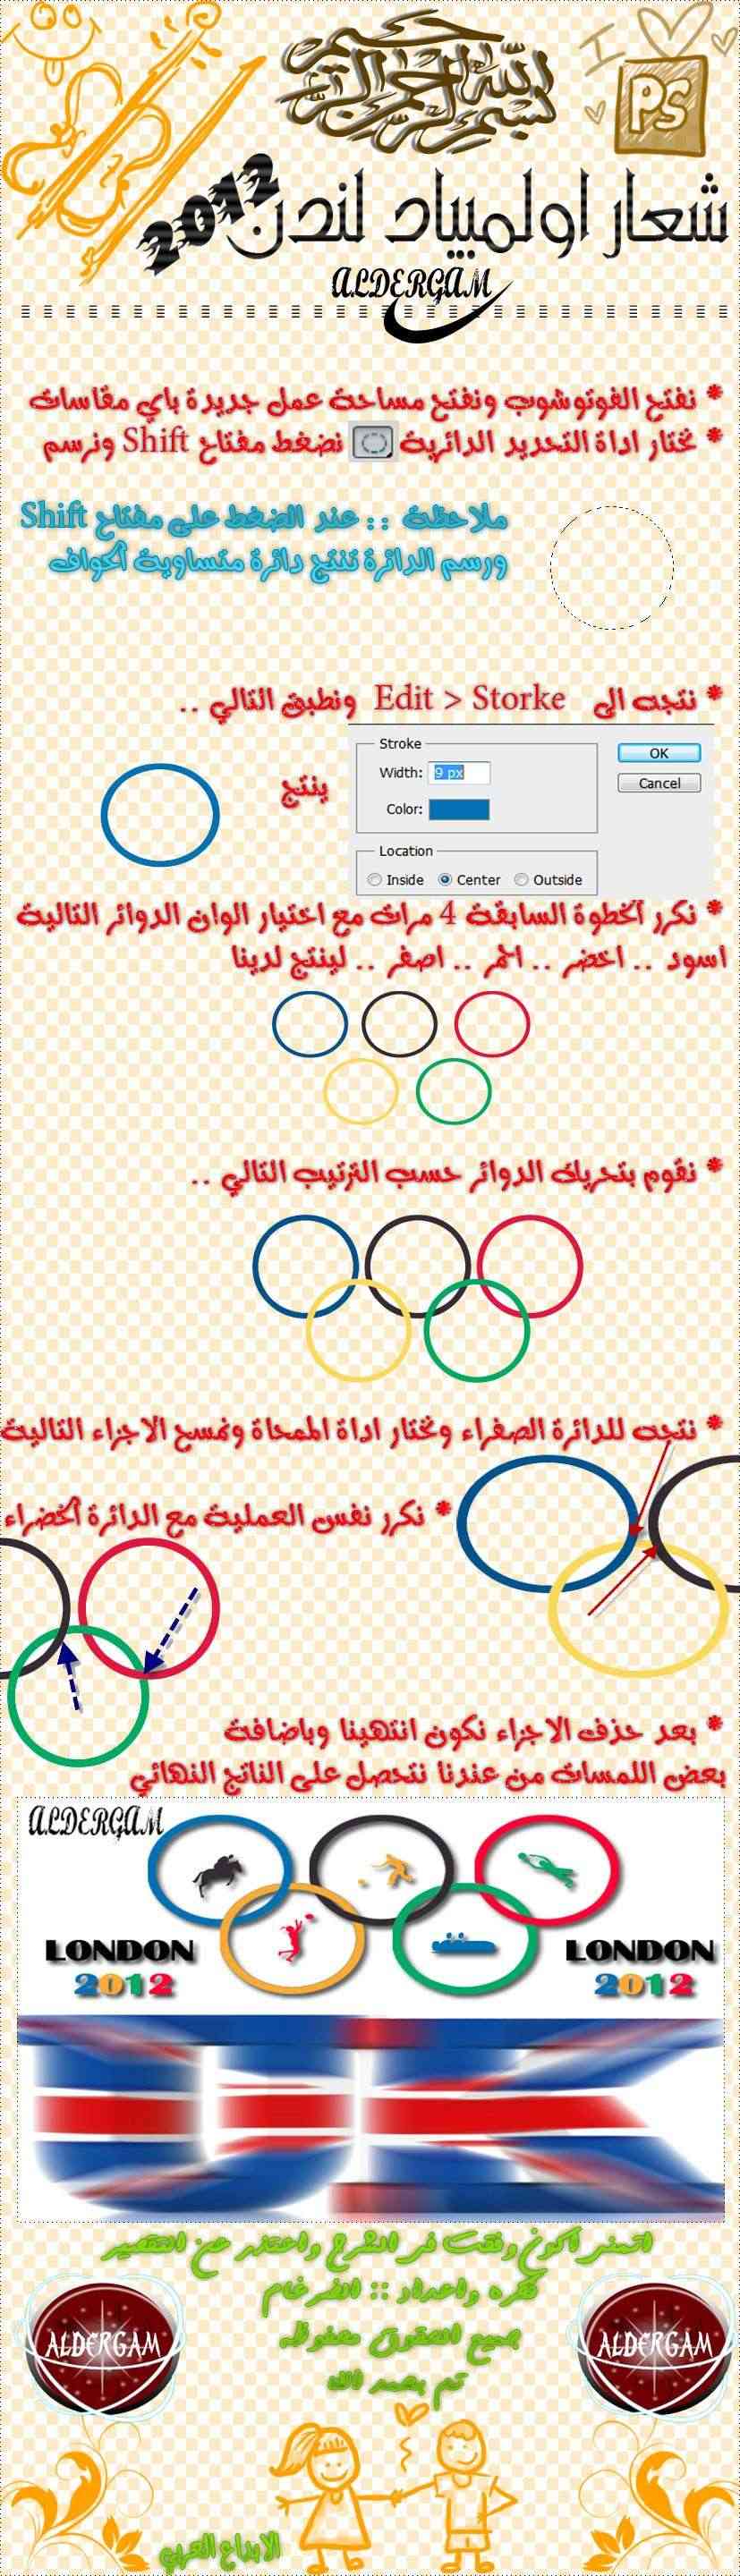 تصميمـ شعار اولمبياد لندن  London12